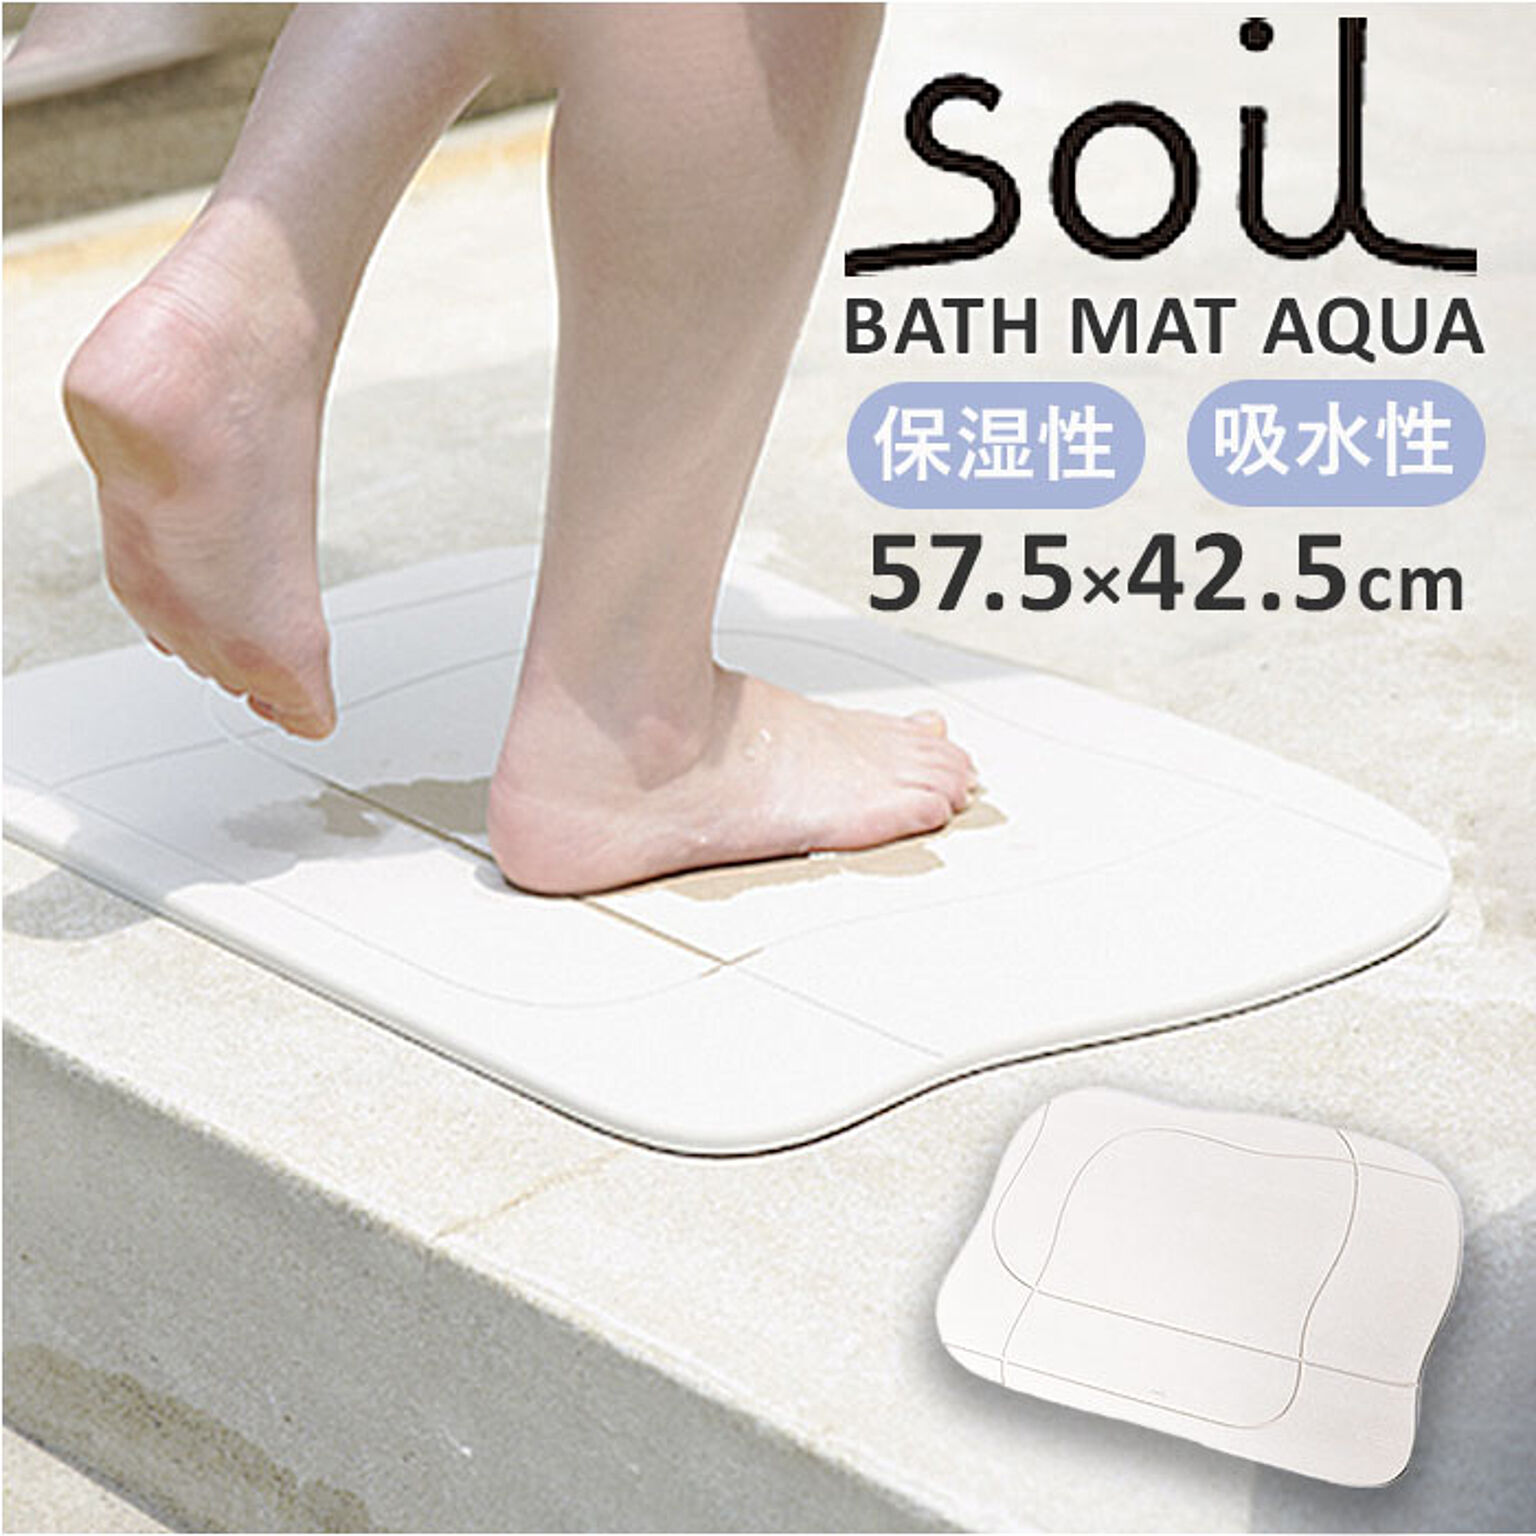 soil ソイル BATH MAT AQUA